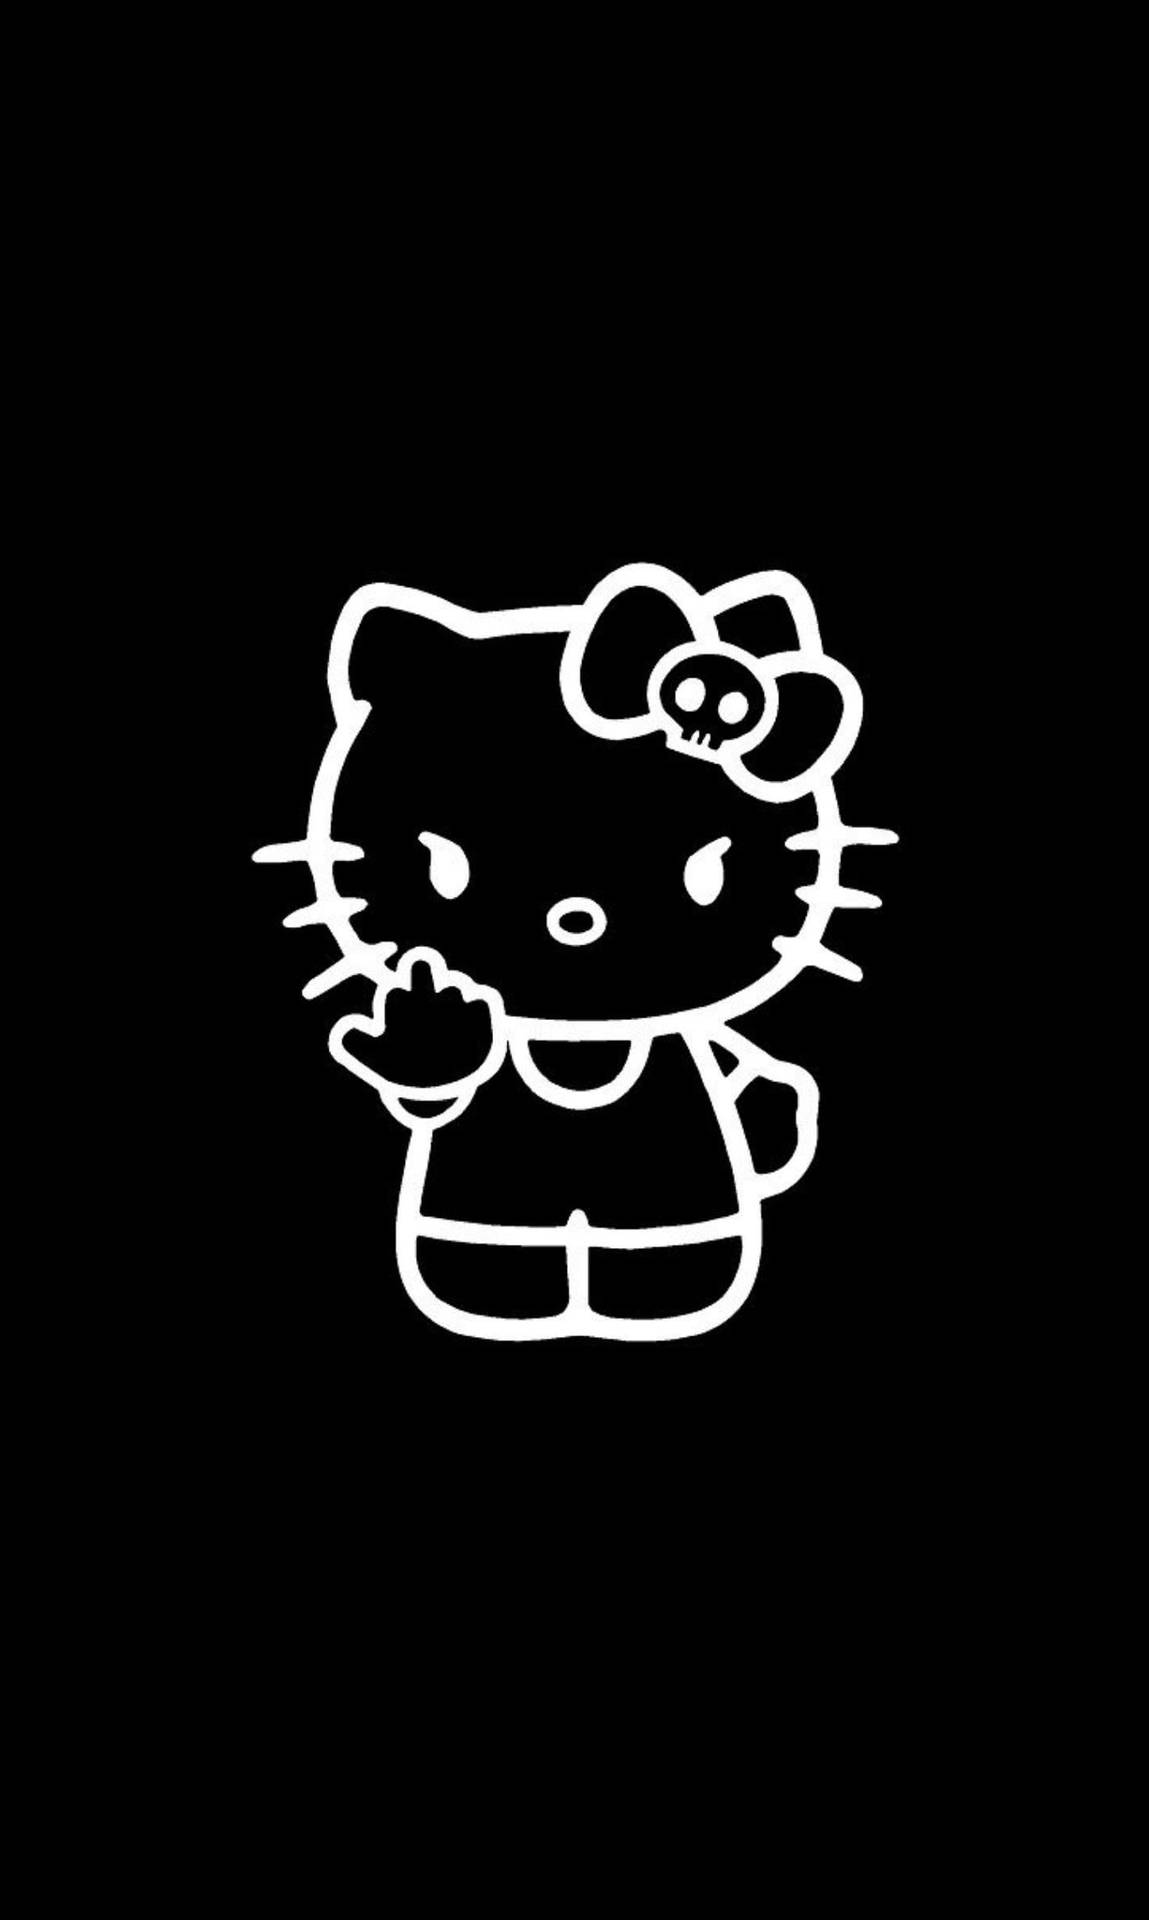 Black Hello Kitty Obscene Gesture Background